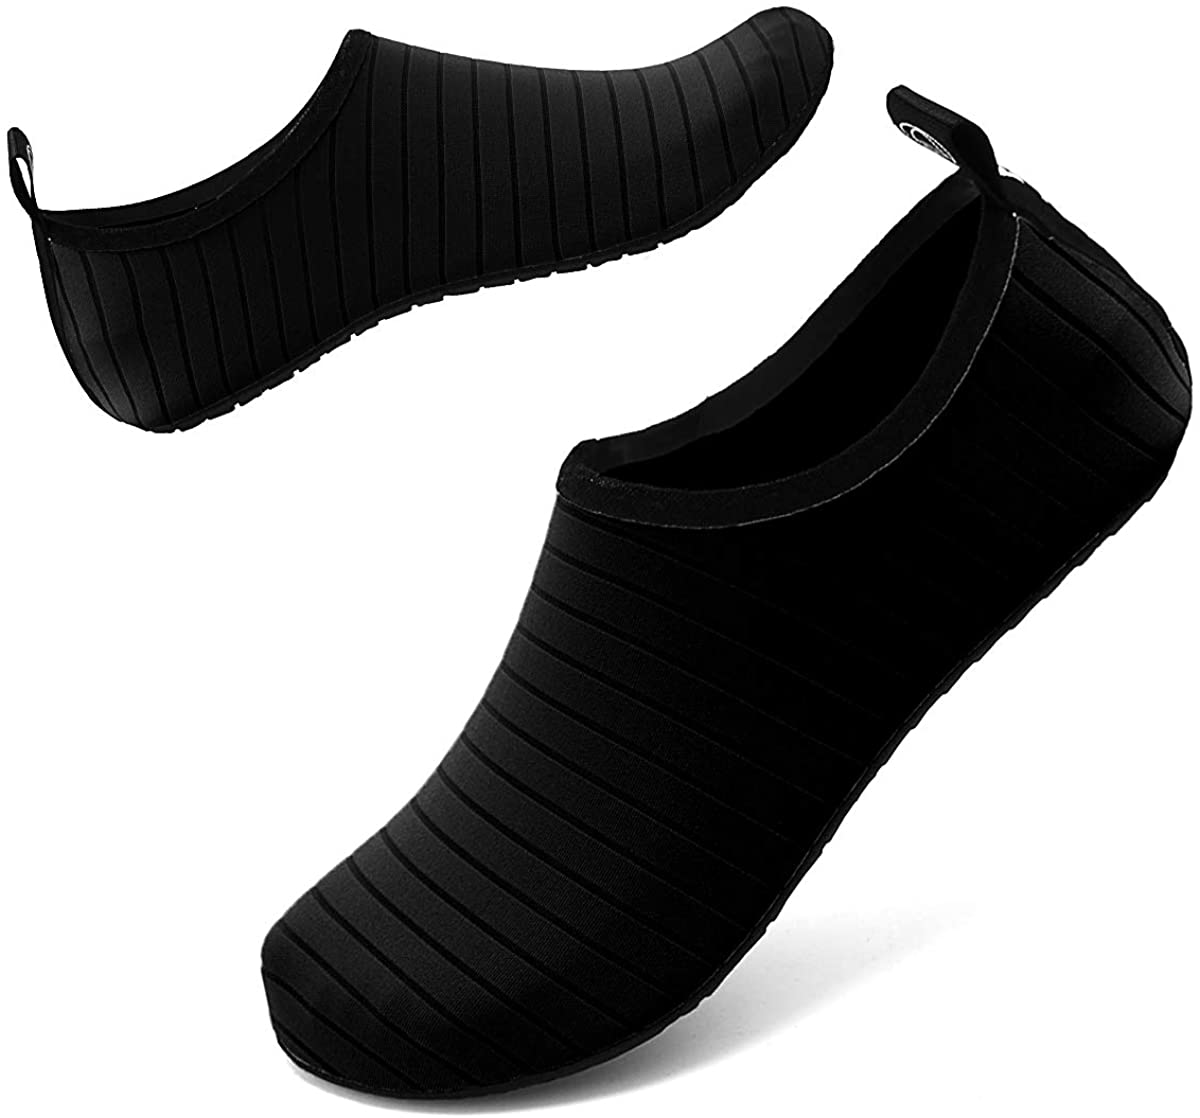 SOVIKER Water Shoes Barefoot Quick-Dry Aqua Socks Beach Swim Surf Yoga Exercise Shoes for Women Men